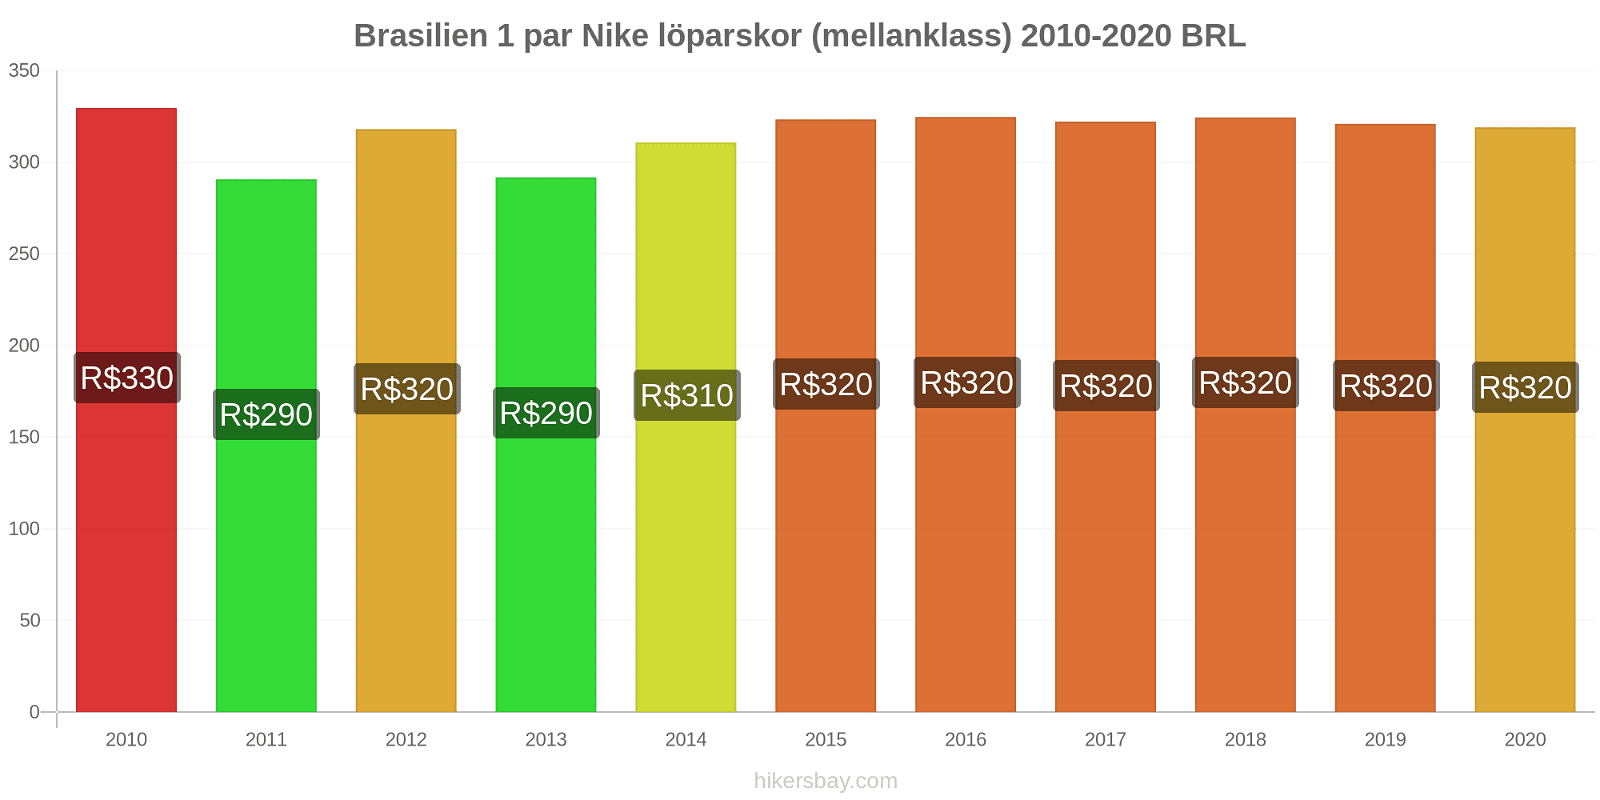 Brasilien prisförändringar 1 par Nike löparskor (mellanklass) hikersbay.com